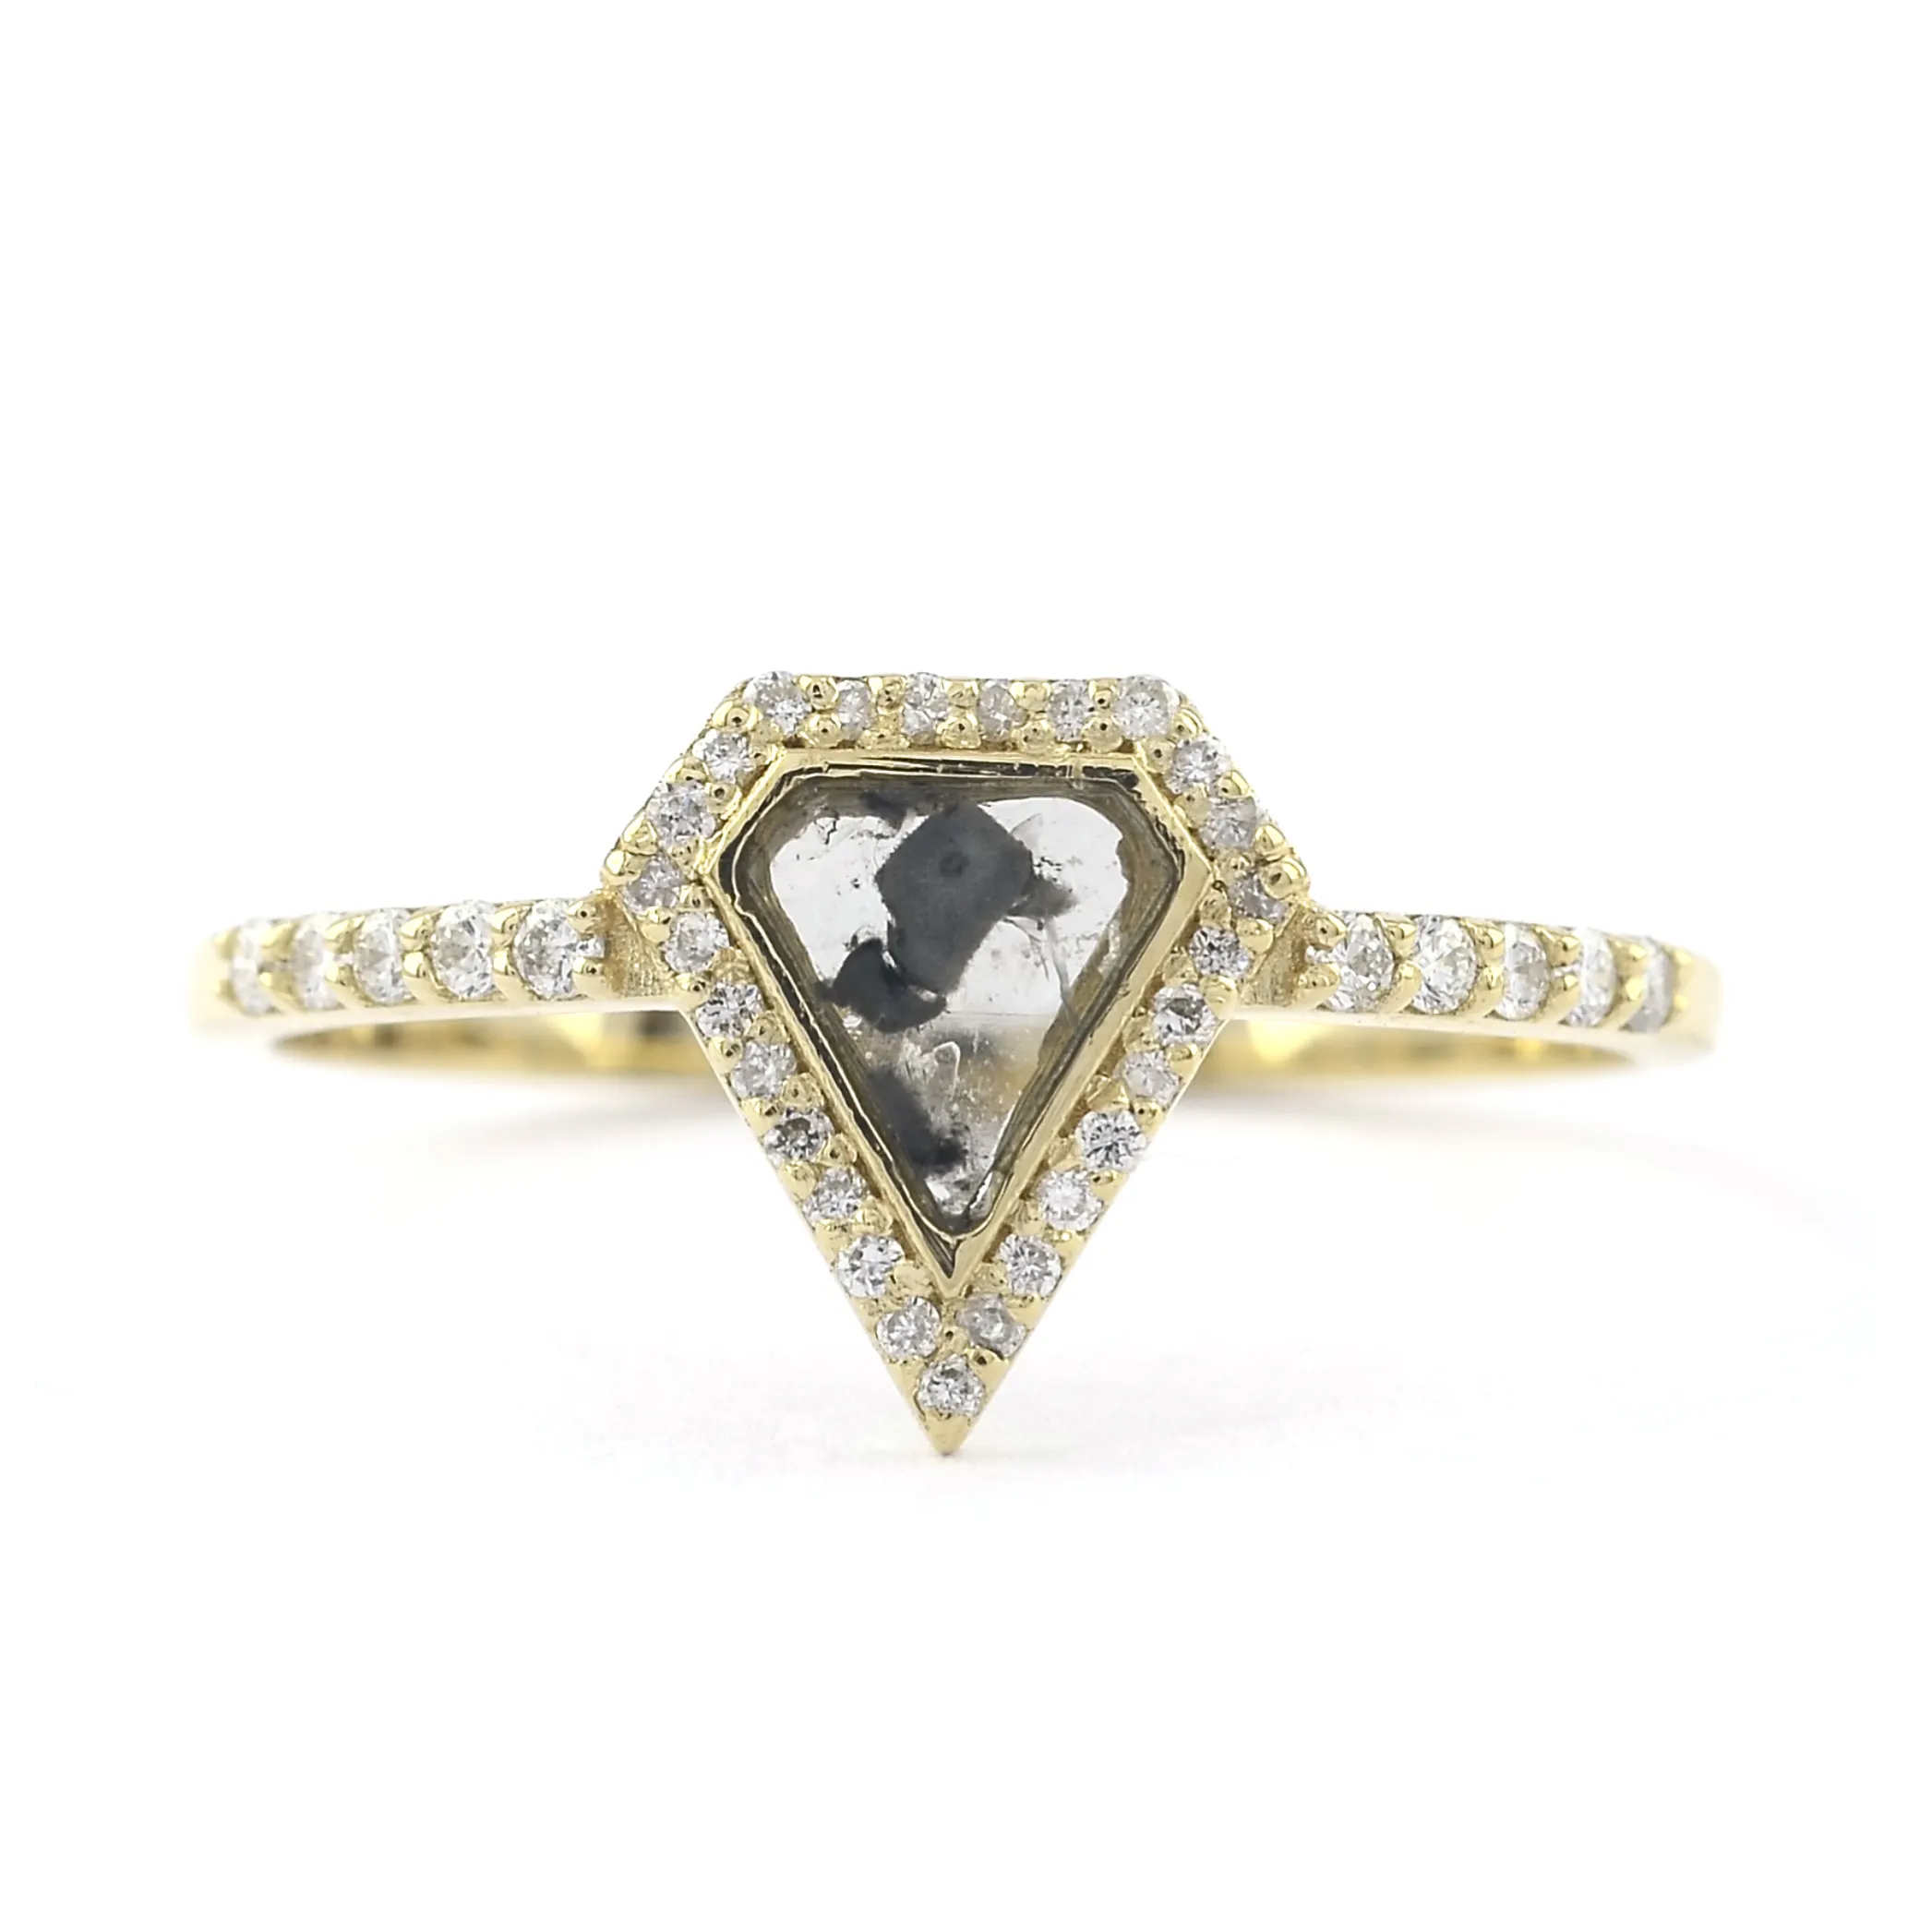 हीरे के गहने 18k ठोस सोने के असली हीरे की अंगूठी नमक और काली मिर्च का टुकड़ा शादी की अंगूठी हस्तकला सोने के गहने